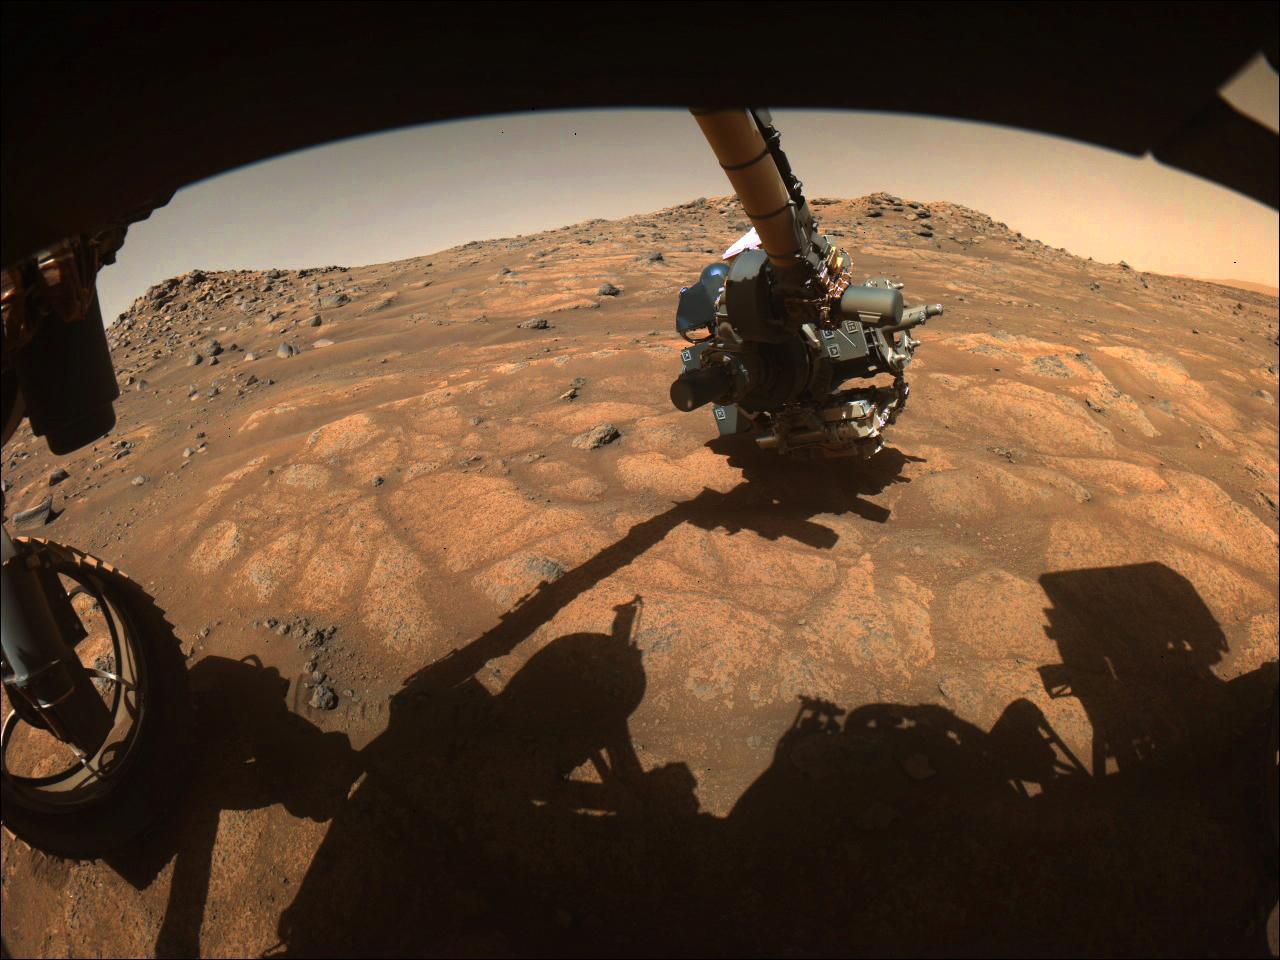 Mars/NASA photos